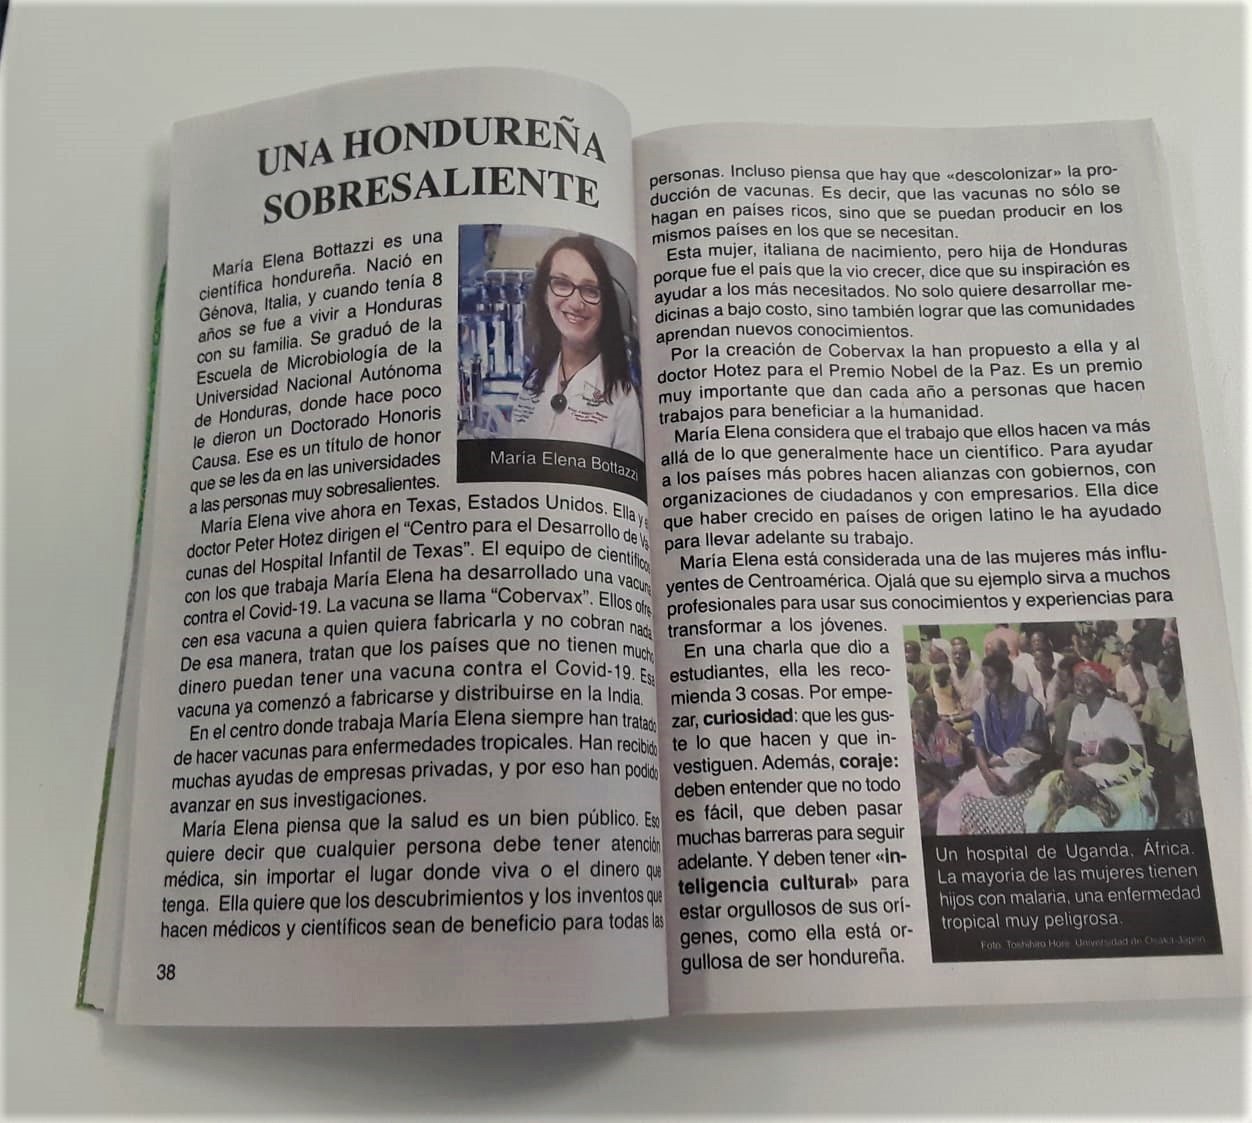 EN SU EDICION 2023

Almanaque Escuela para Todos rinde homenaje a la científica María Elena Botazzi